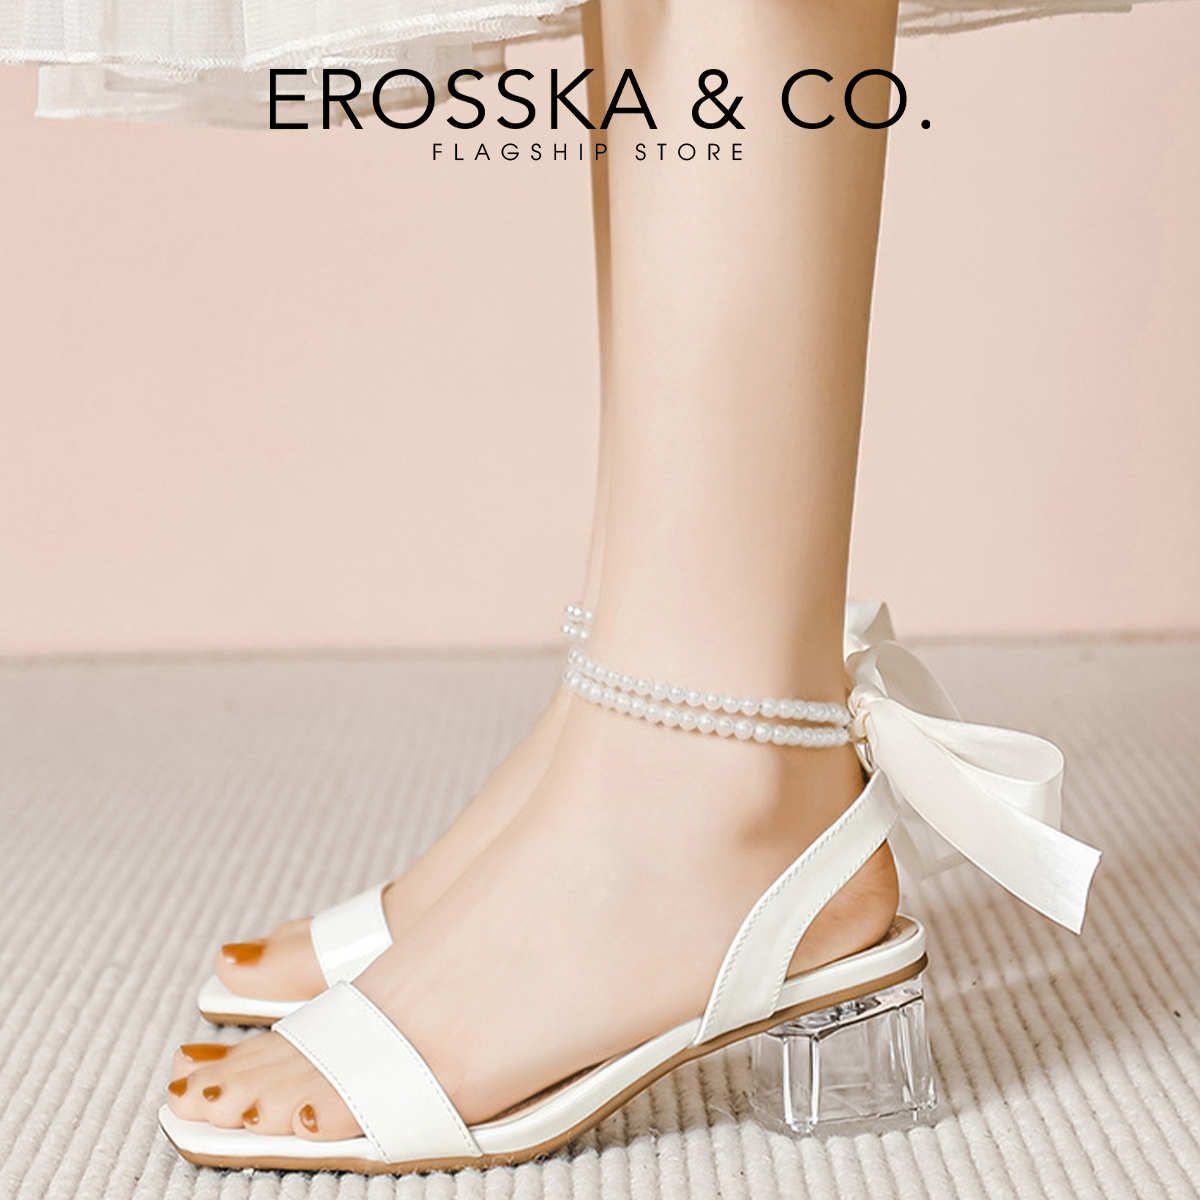 Erosska - Giày sandal cao gót đi học dây thắt nơ phối ngọc cao 4cm _ EB048